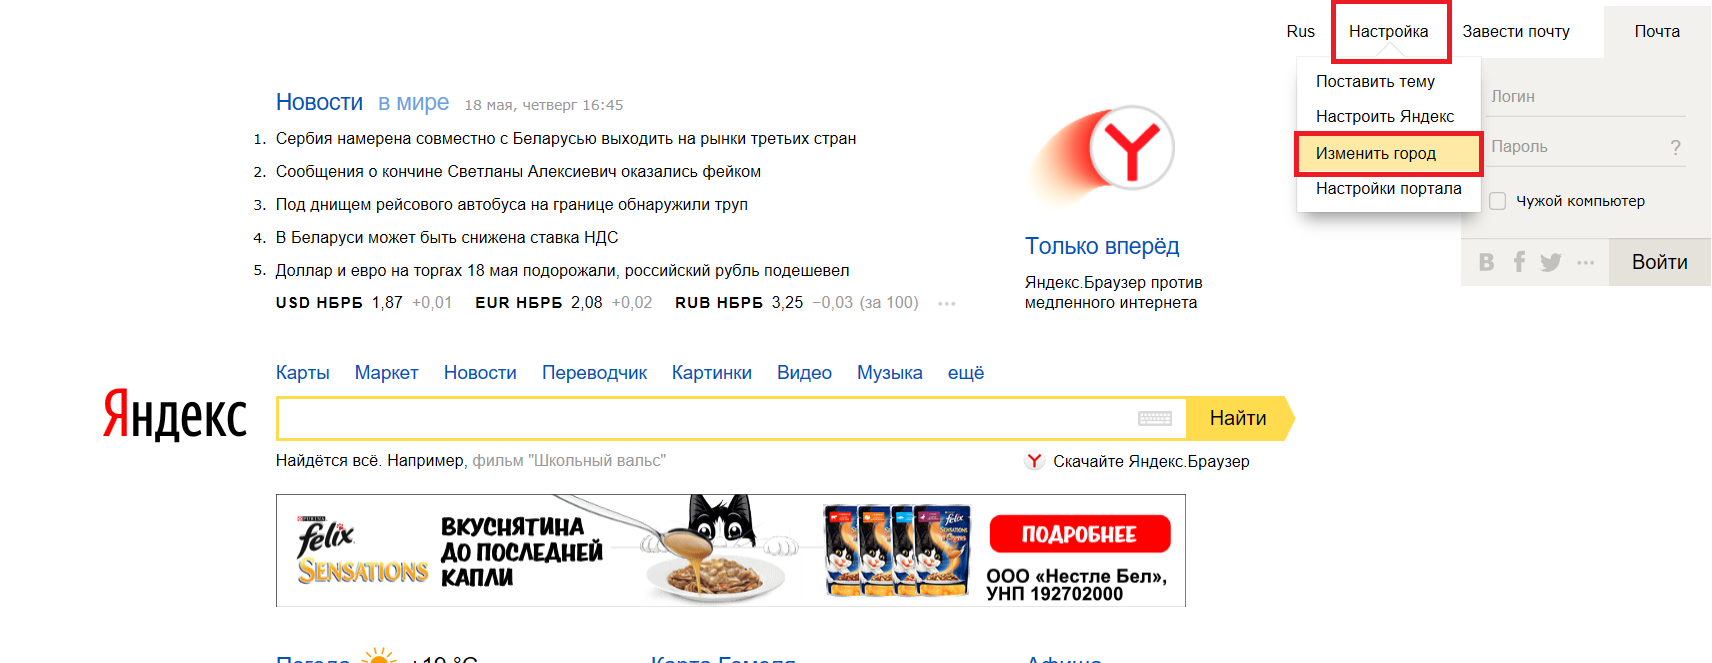 Как сохранить город в яндексе. Как поменять город в Яндексе. Изменить город в Яндексе. Изменить город на стартовой странице Яндекса.